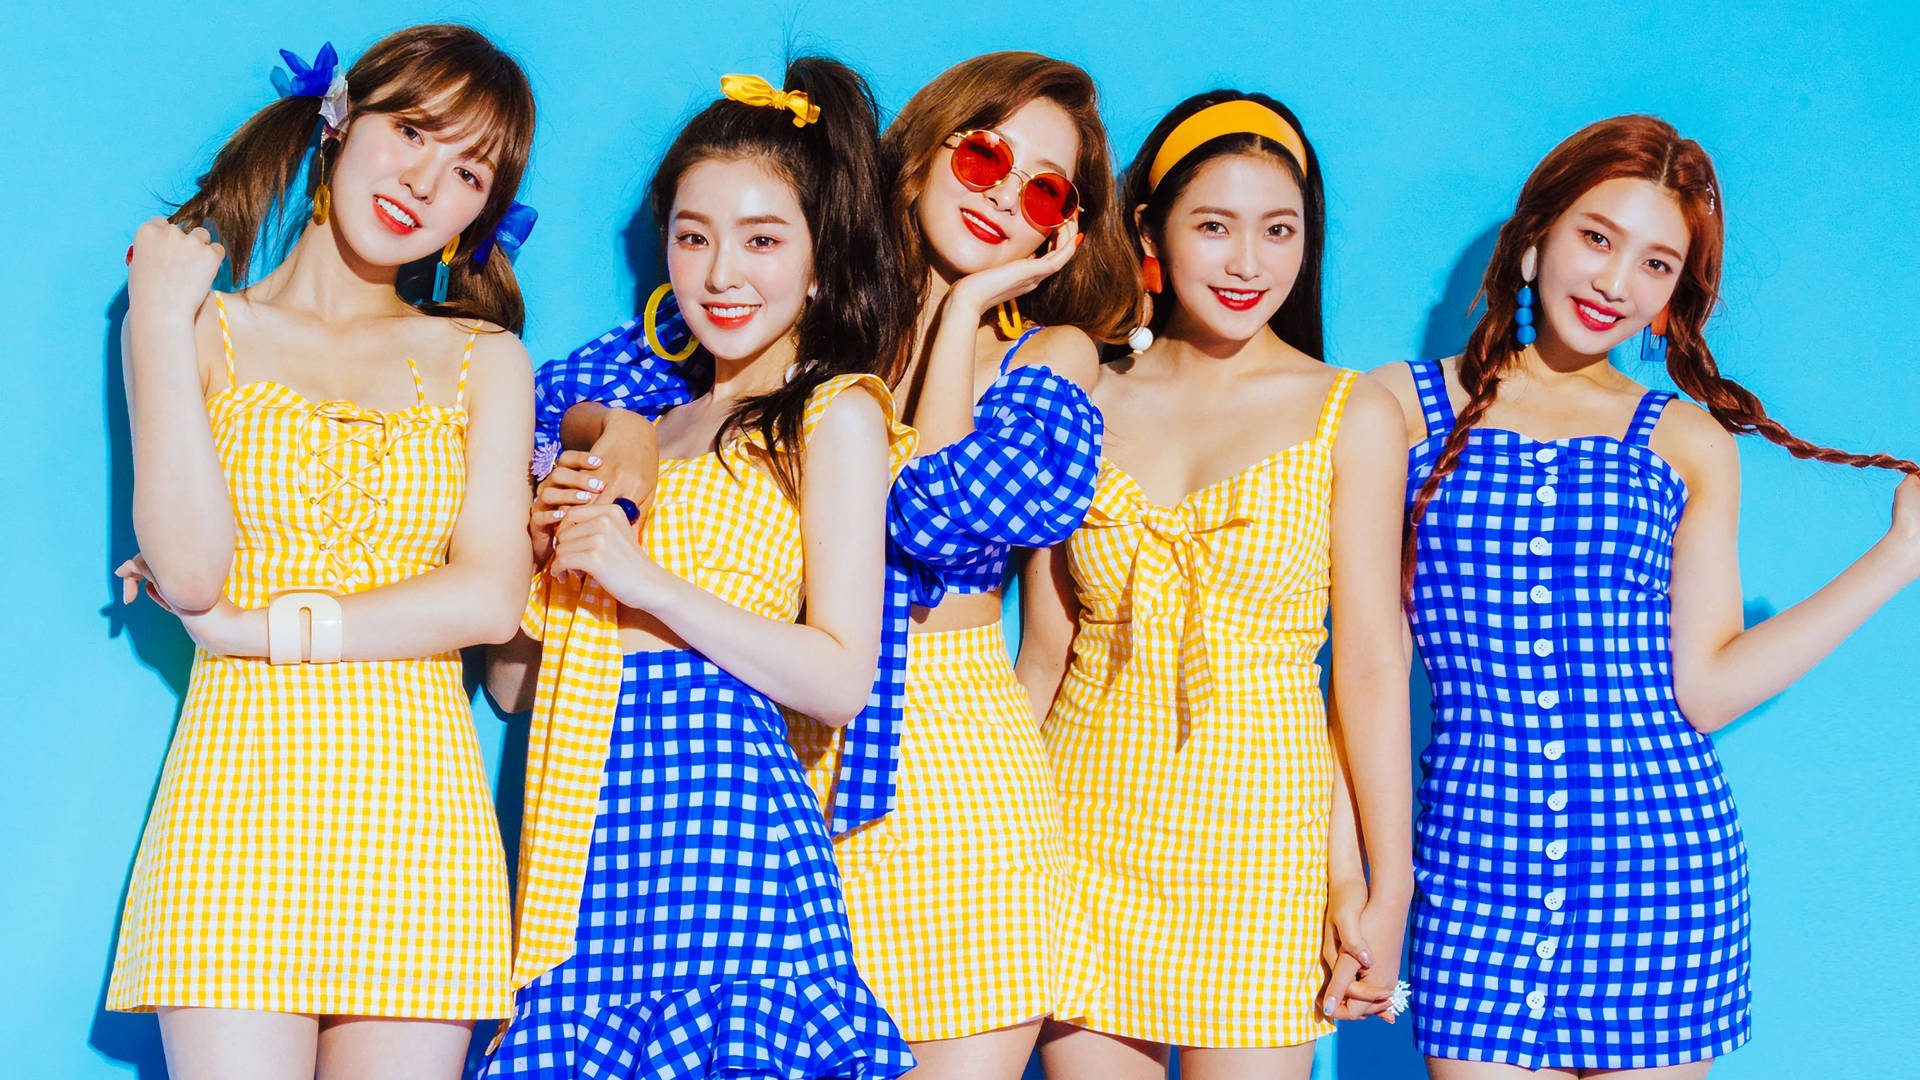 Red Velvet Checkered Photoshoot Wallpaper